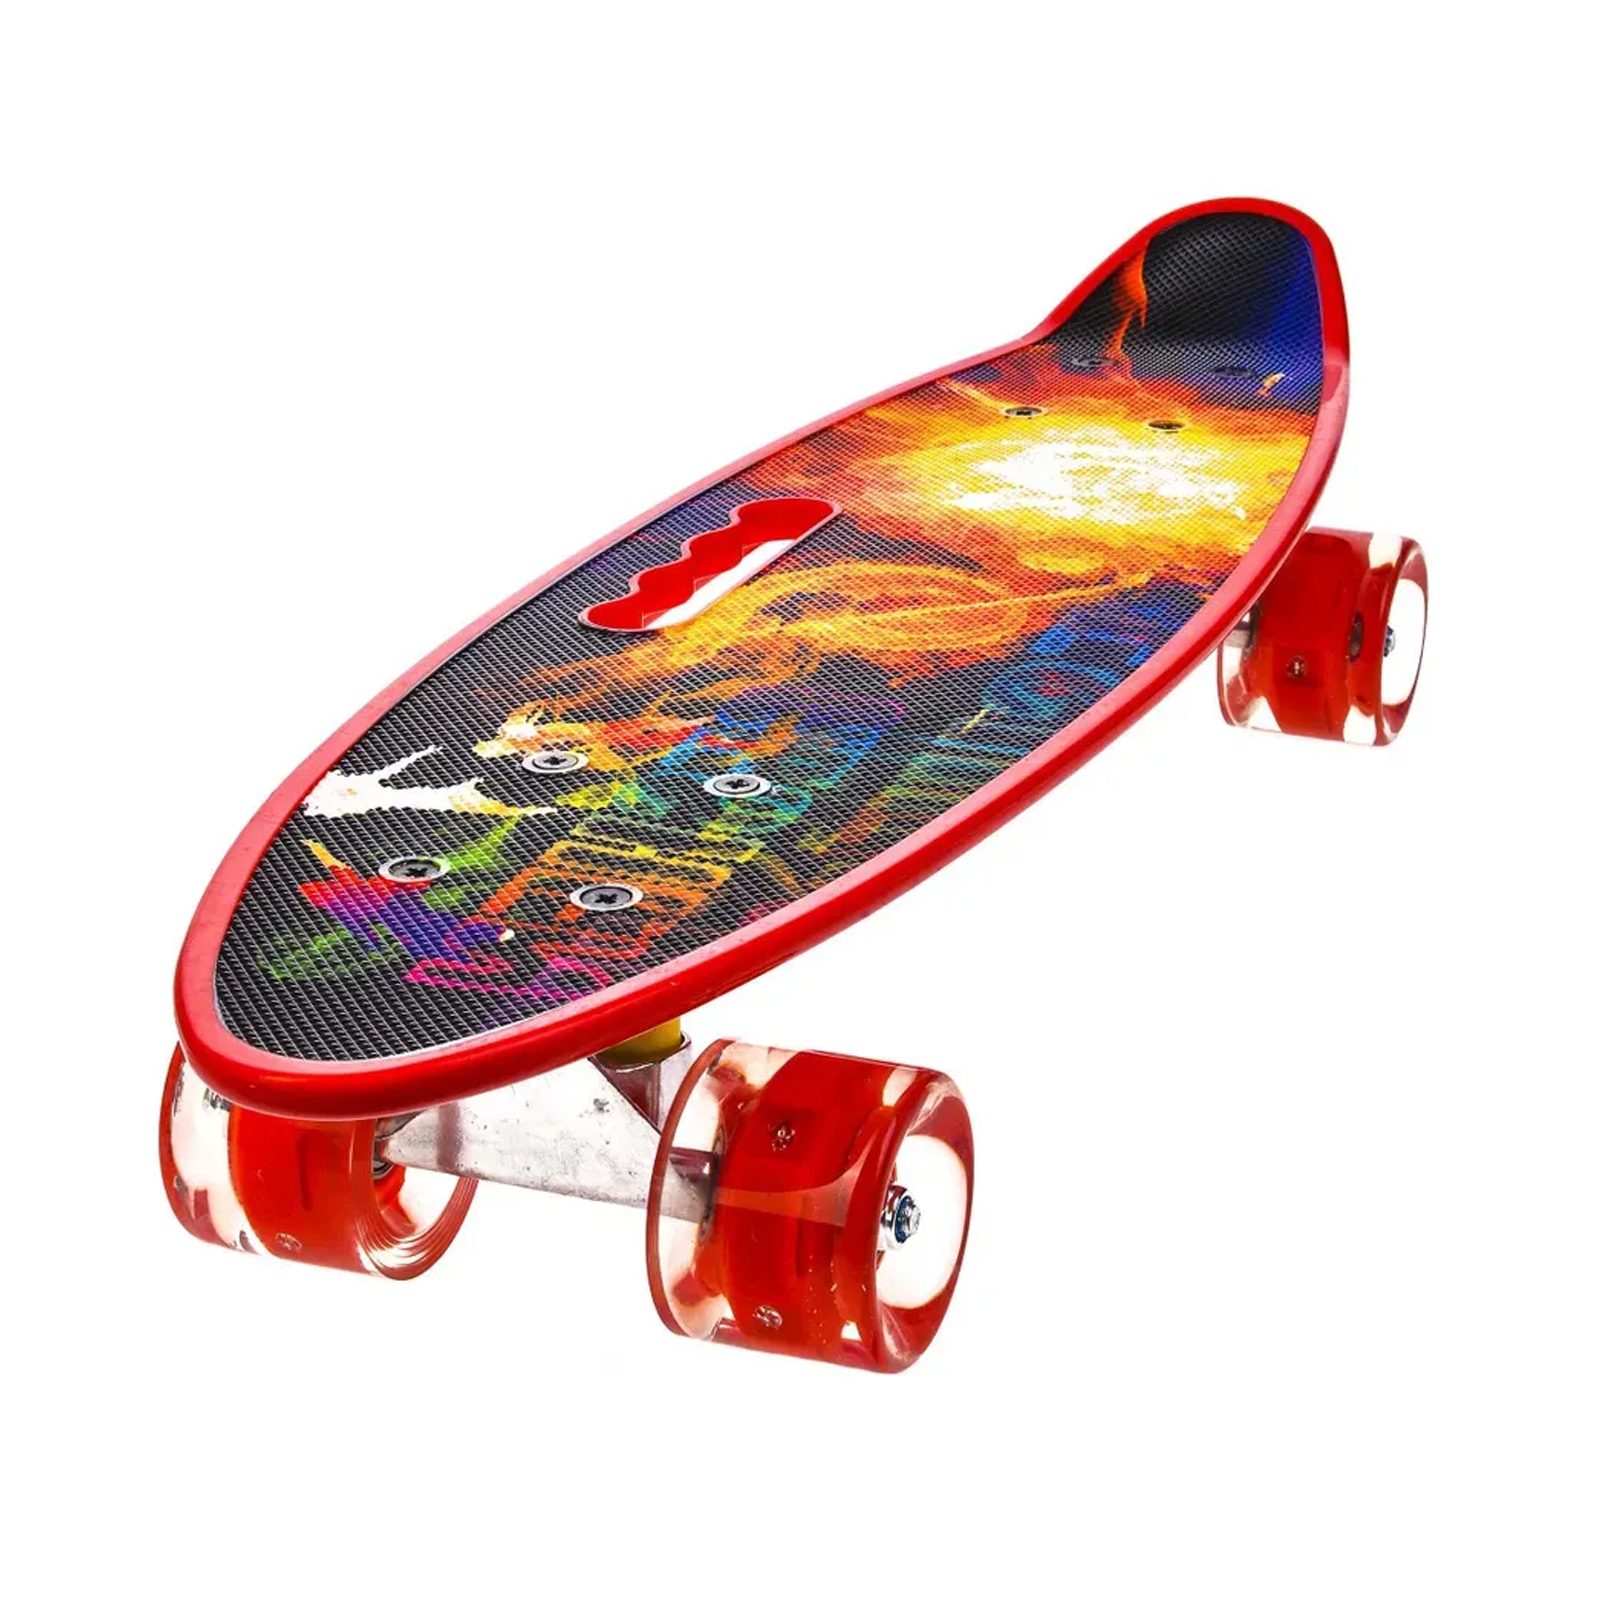 Пенни борд Market toys lab с ручкой круизер со светящимися колесами скейтборд пластиковый playsmart пенни борд колёса pvc 55х15 см